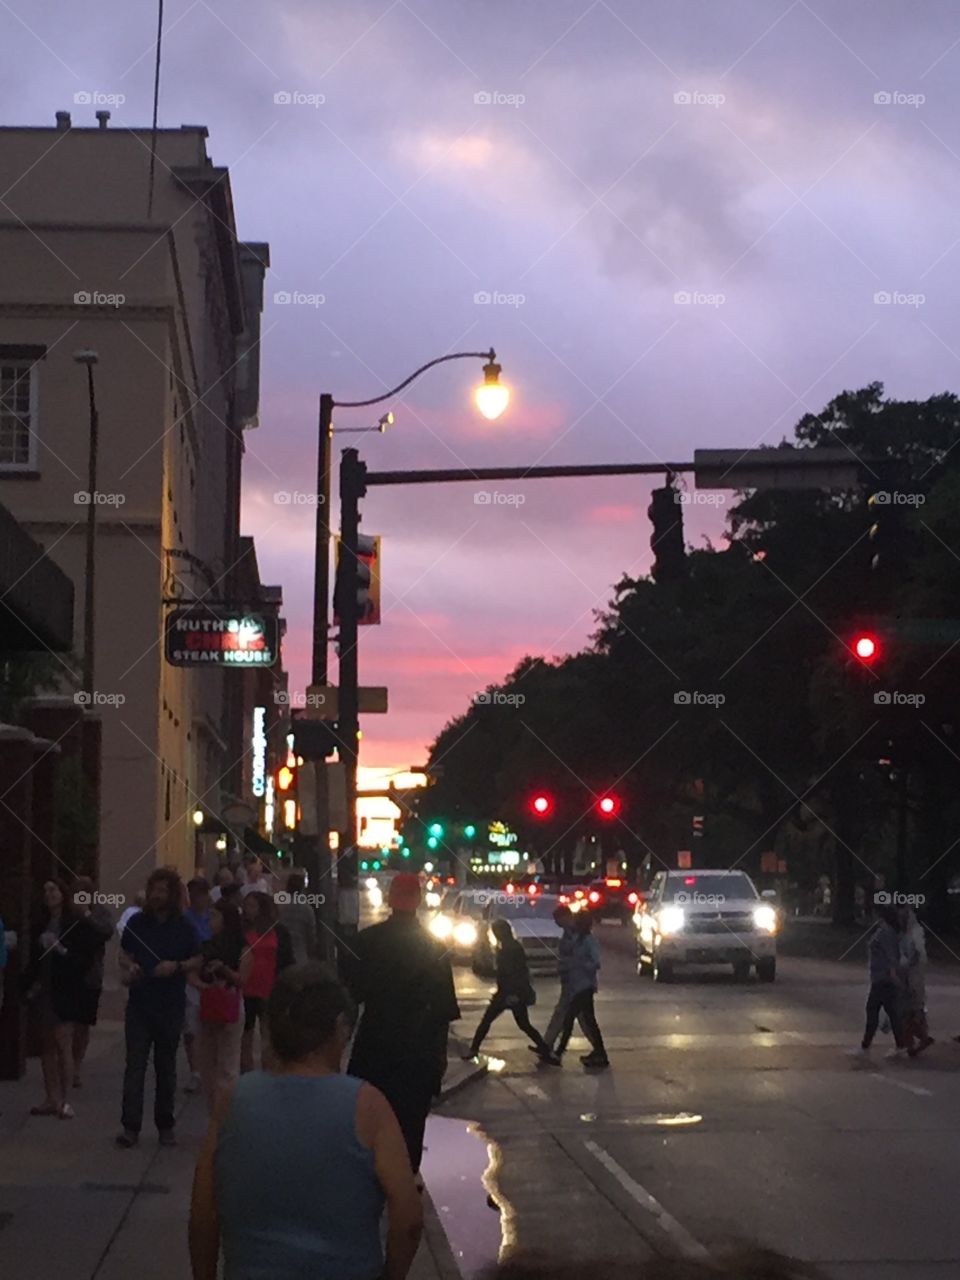 Sunset in Savannah. 